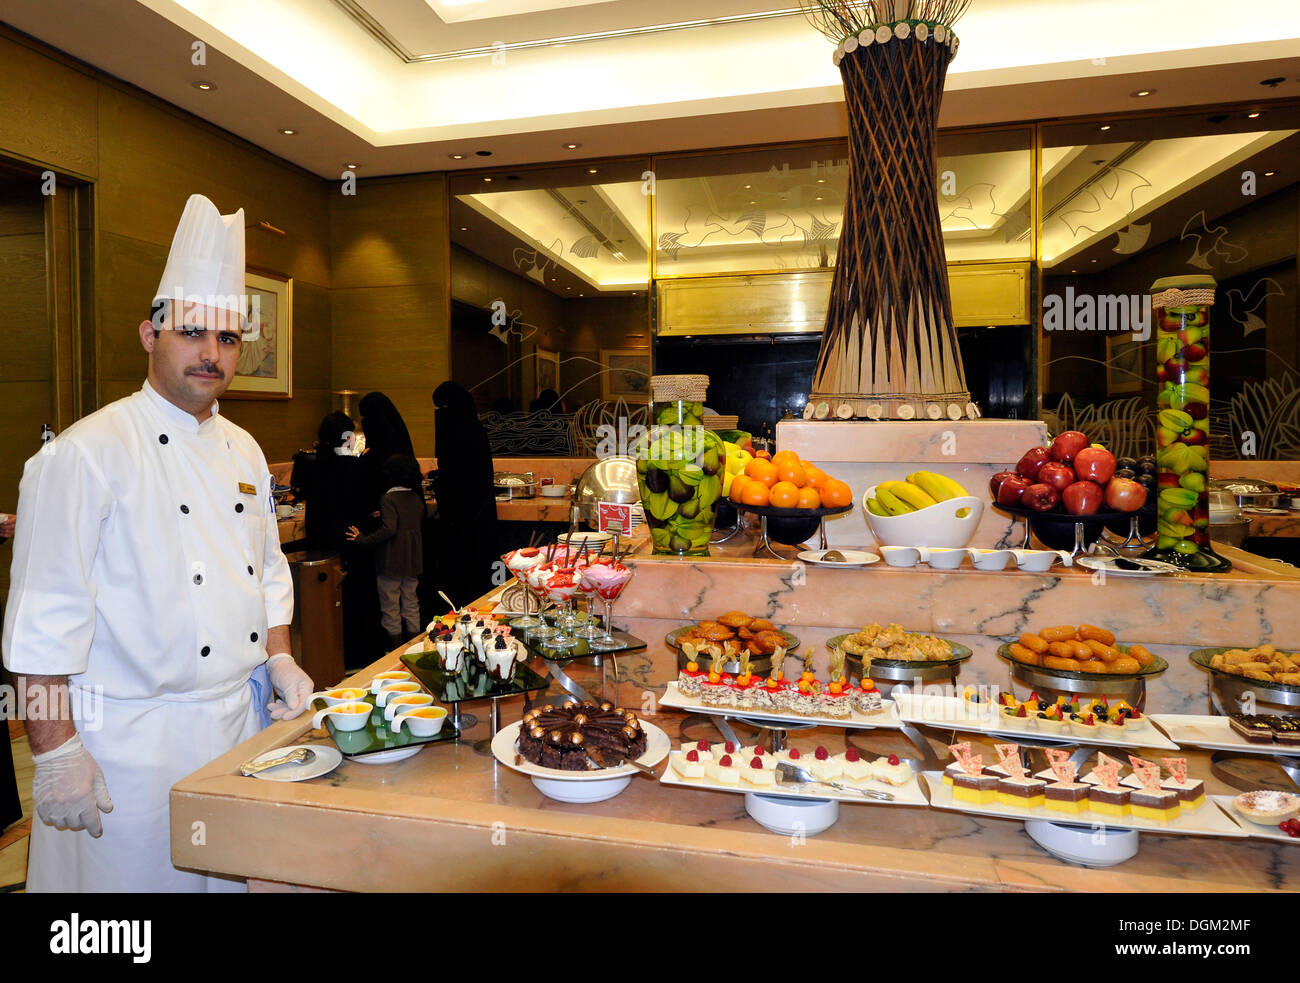 L'intérieur, de la cuisine à côté d'un buffet, l'hôtel Sheraton de Doha, Doha, Qatar, du golfe Persique, au Moyen-Orient, en Asie Banque D'Images